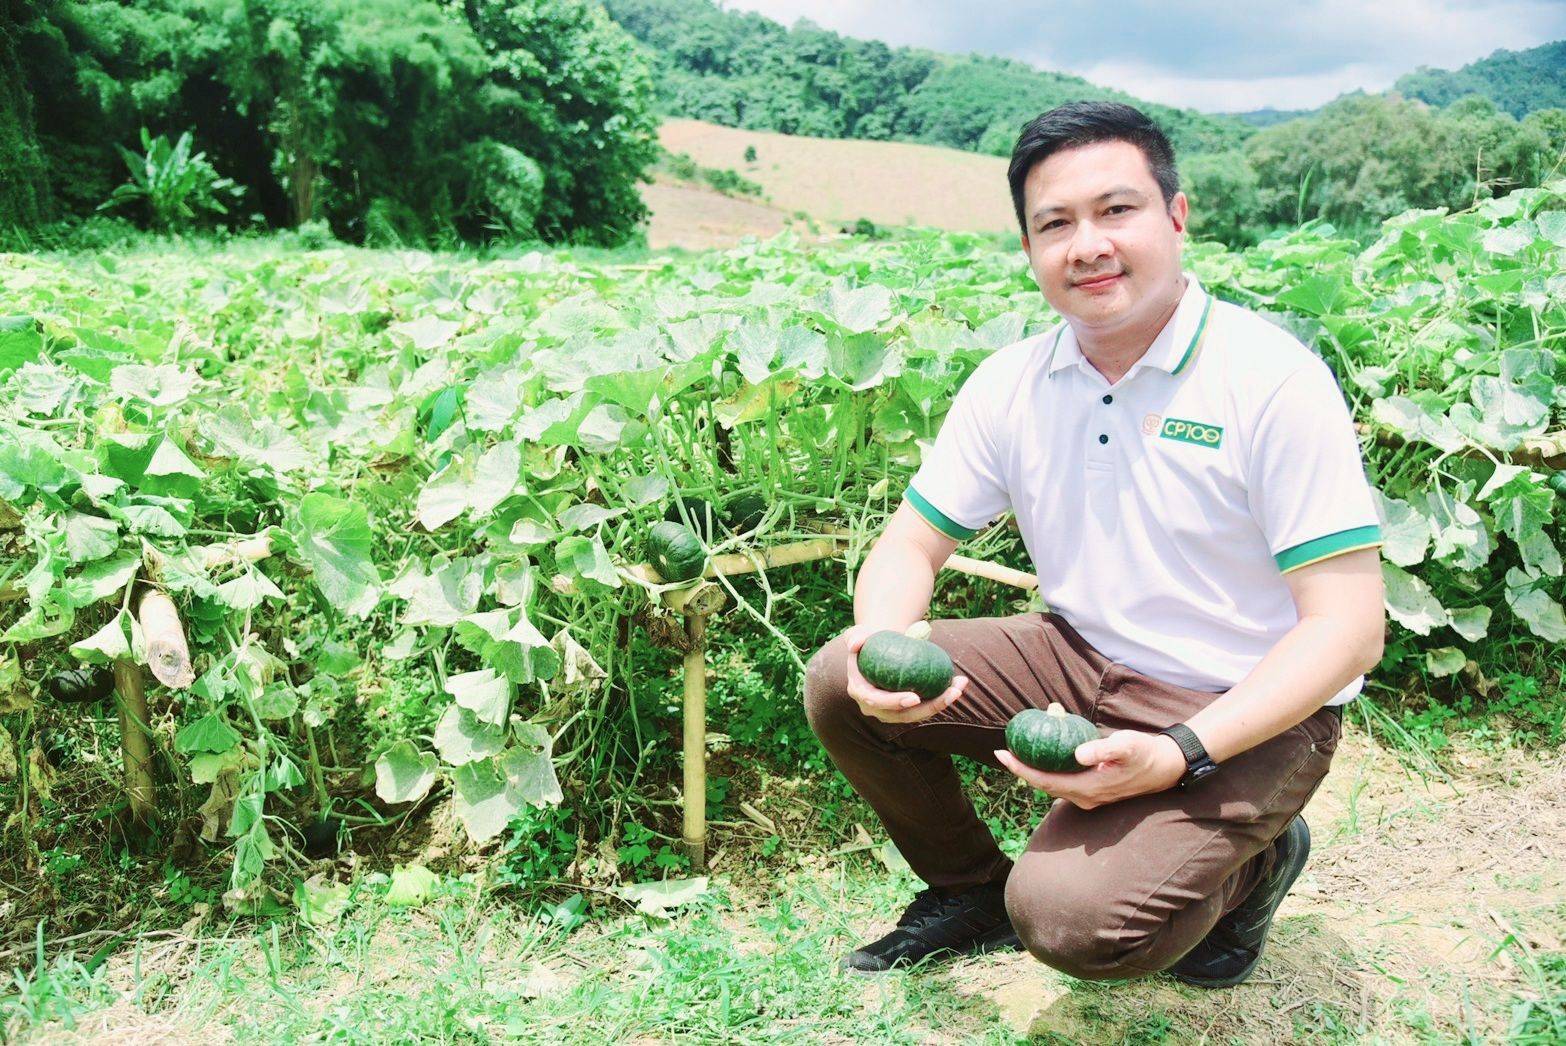 ธุรกิจฟักทองมินิบอลครบวงจร ช่วยเกษตรกร - Chiang Mai News